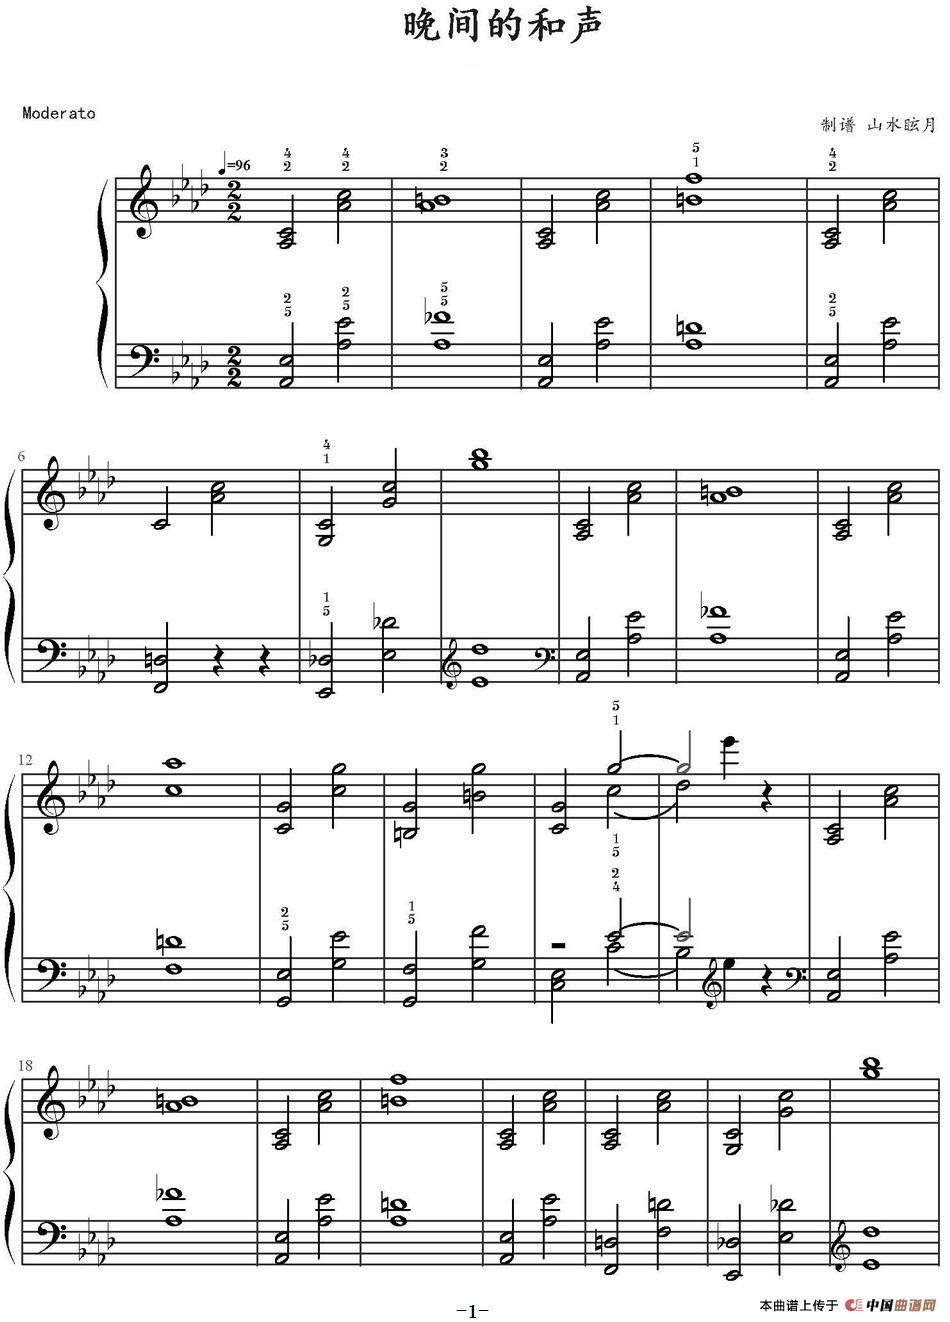 《晚间的和声》钢琴曲谱图分享